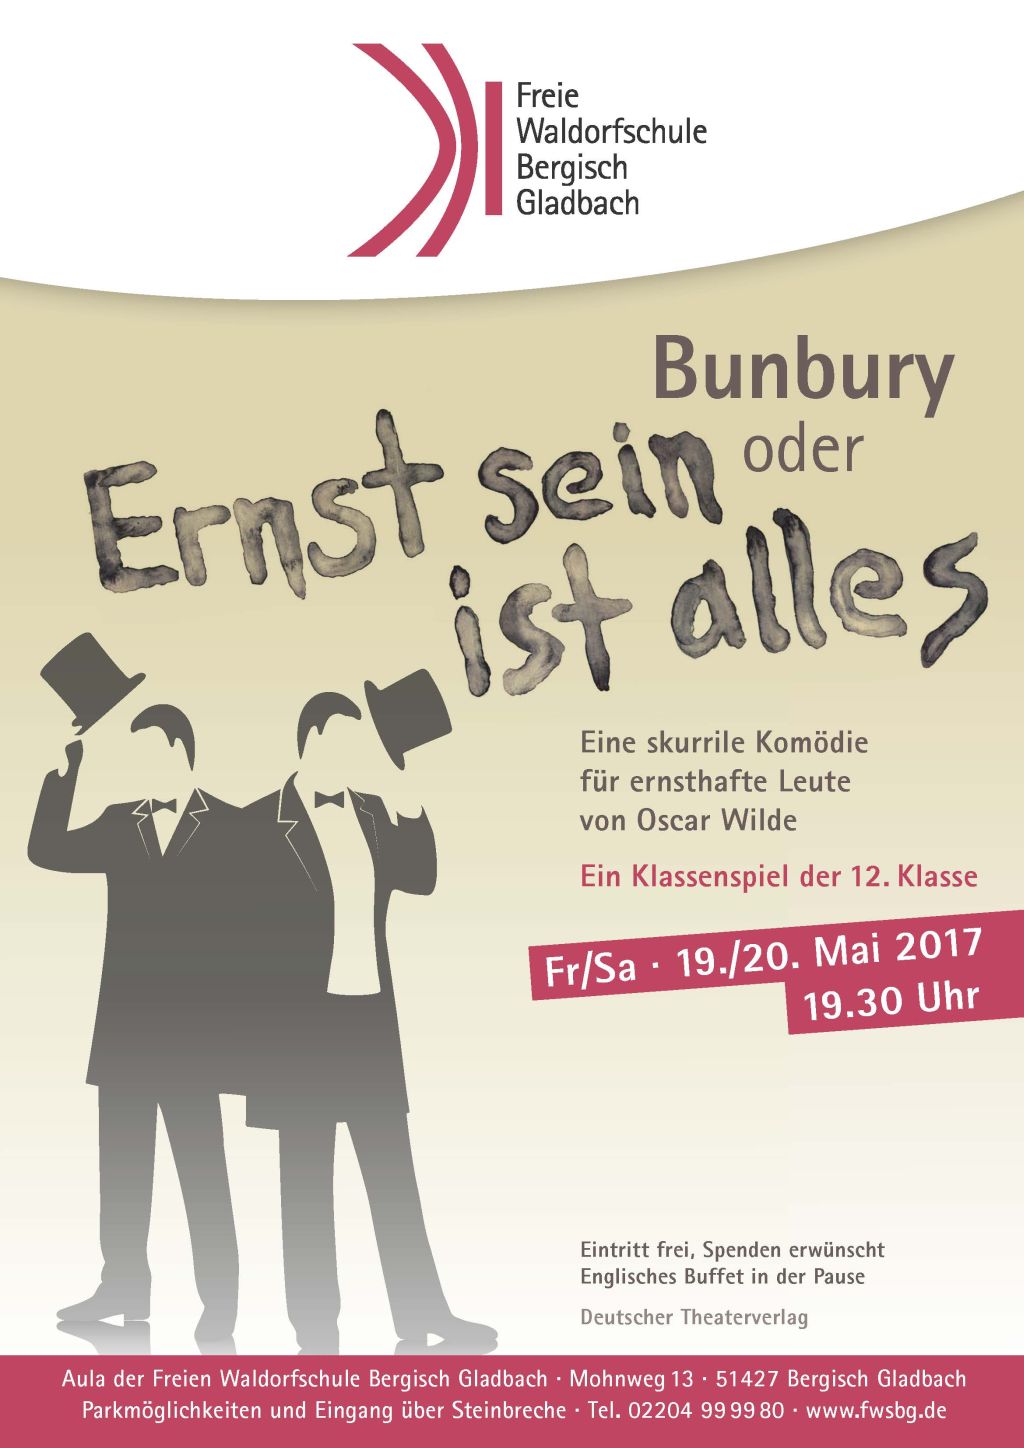 „Bunbury oder Ernst sein ist alles“ - Theateraufführung von Schülern der 12. Klasse der Freien Waldorfschule Bergisch Gladbach